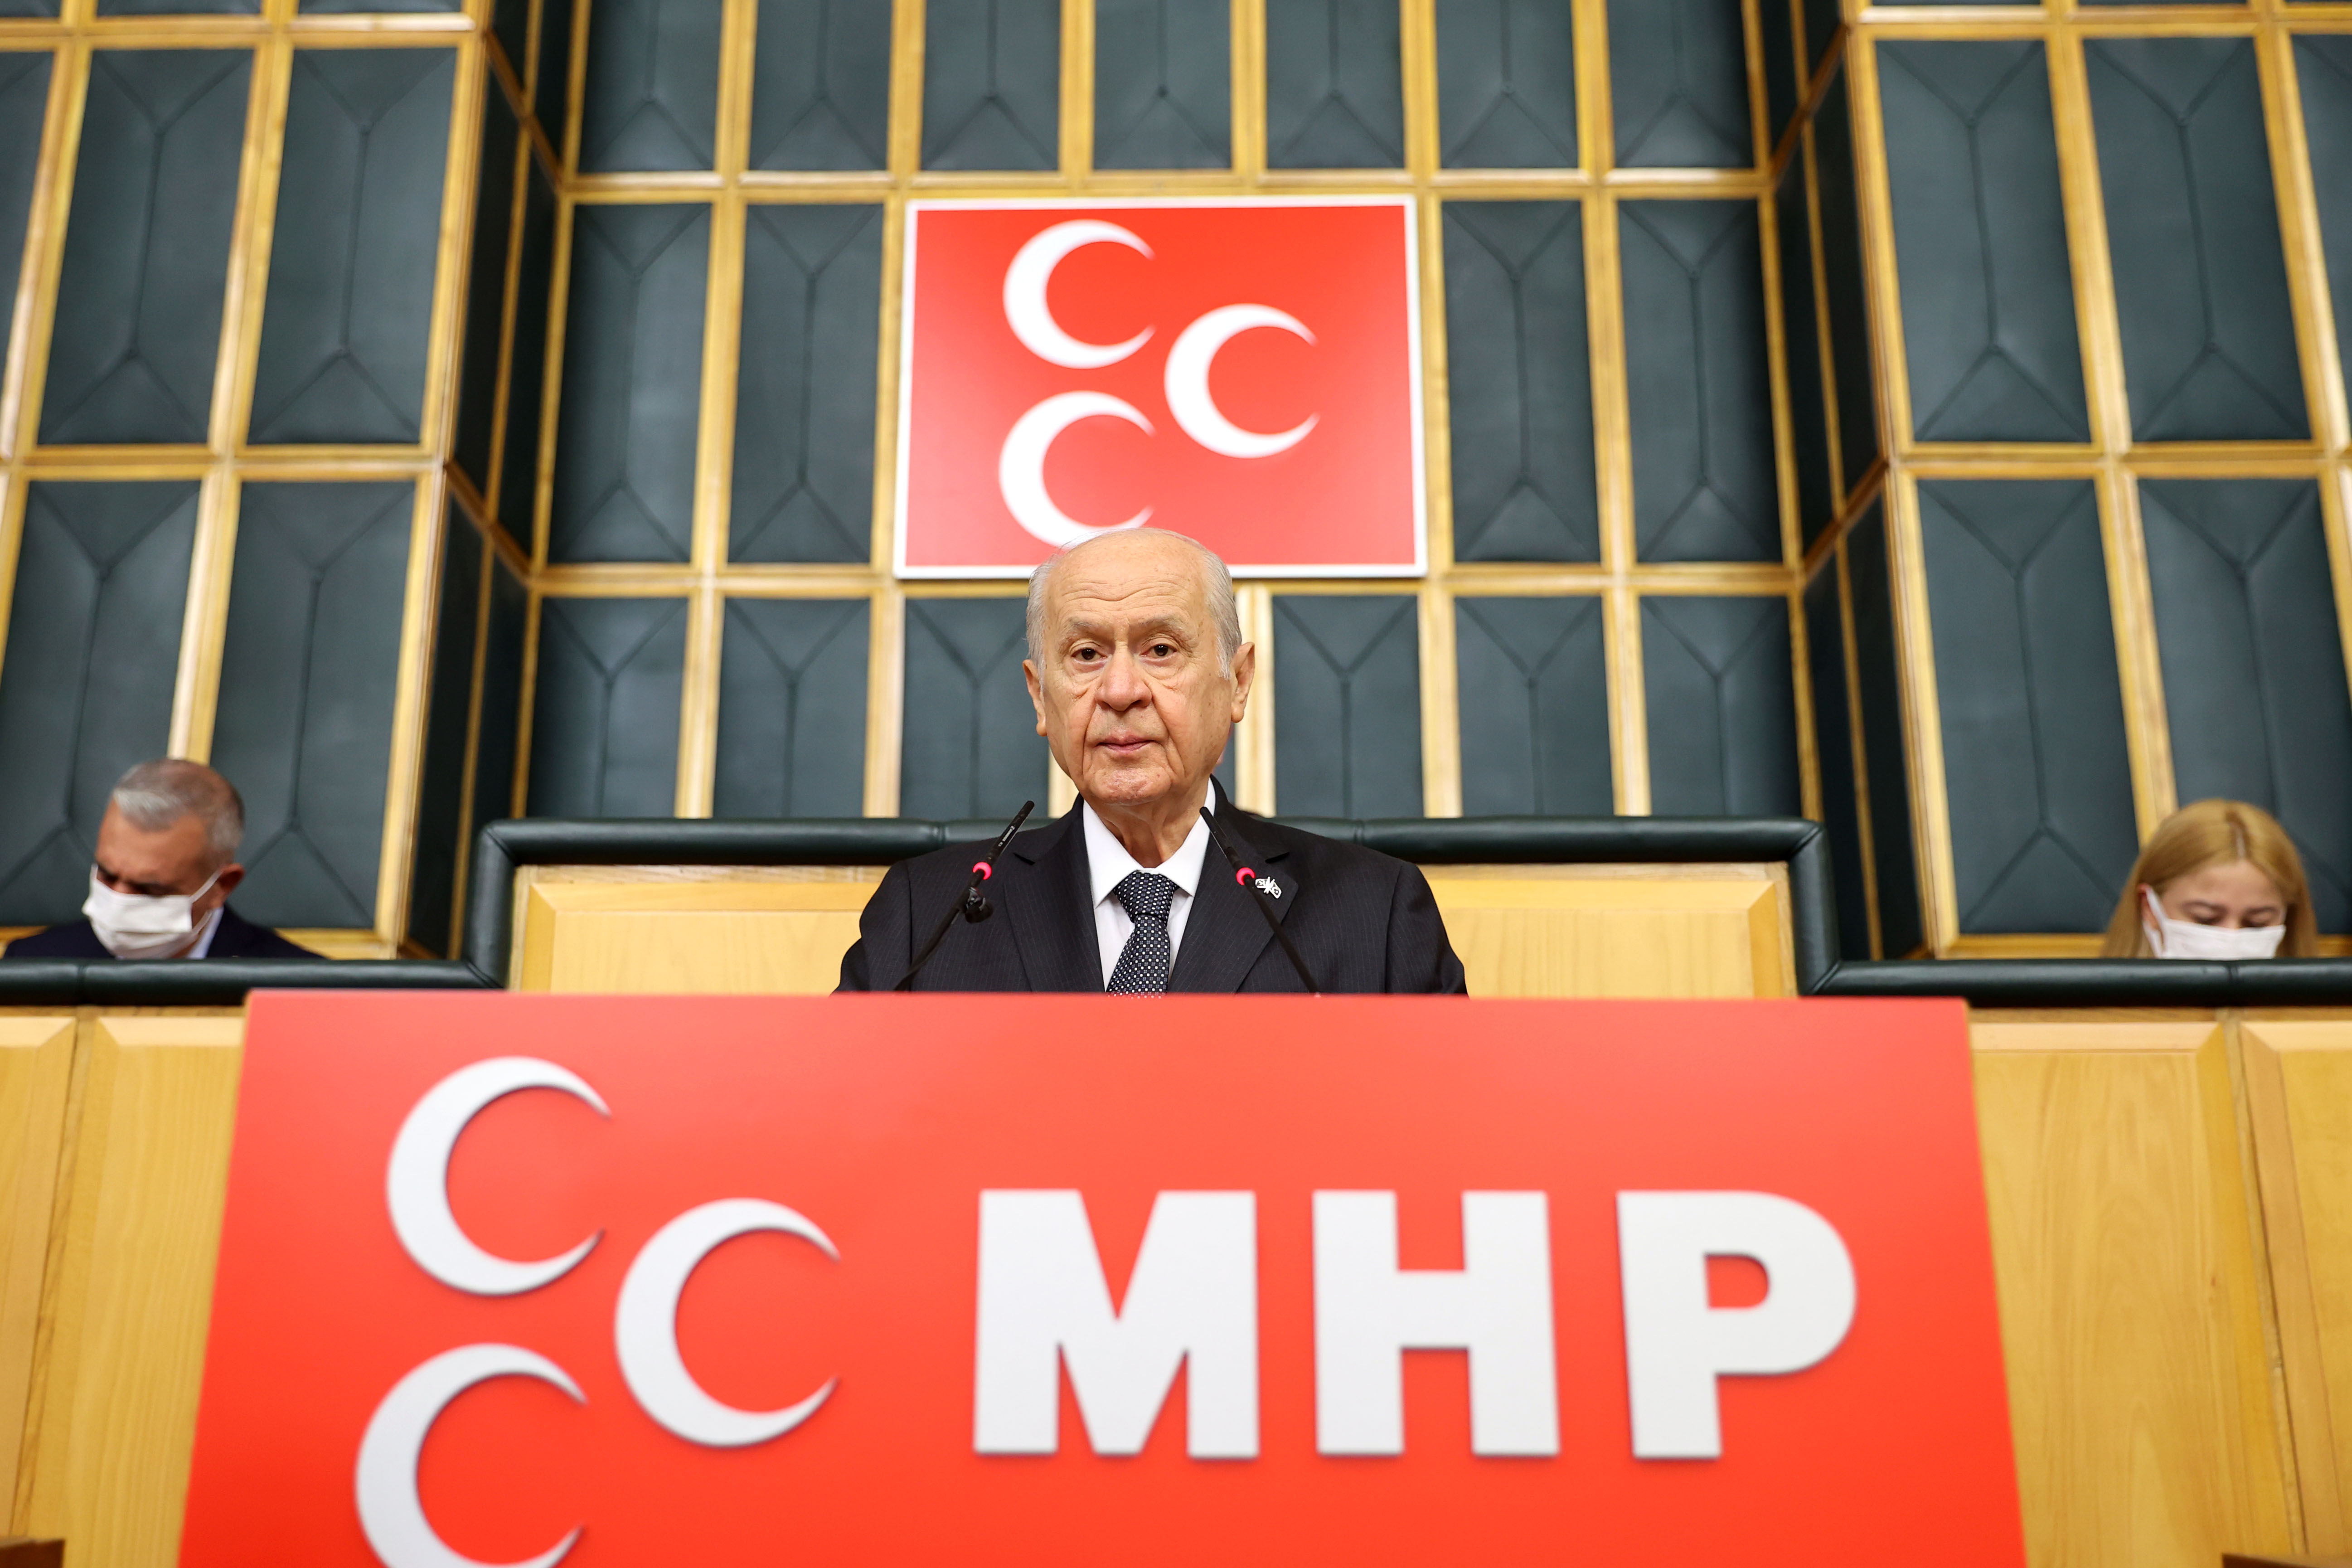 Son dakika | MHP lideri Devlet Bahçeli, Kılıçdaroğlu'na seslendi: Erken seçim, haydi seçim, hemen seçim yoktur, buna alışman tavsiyemdir